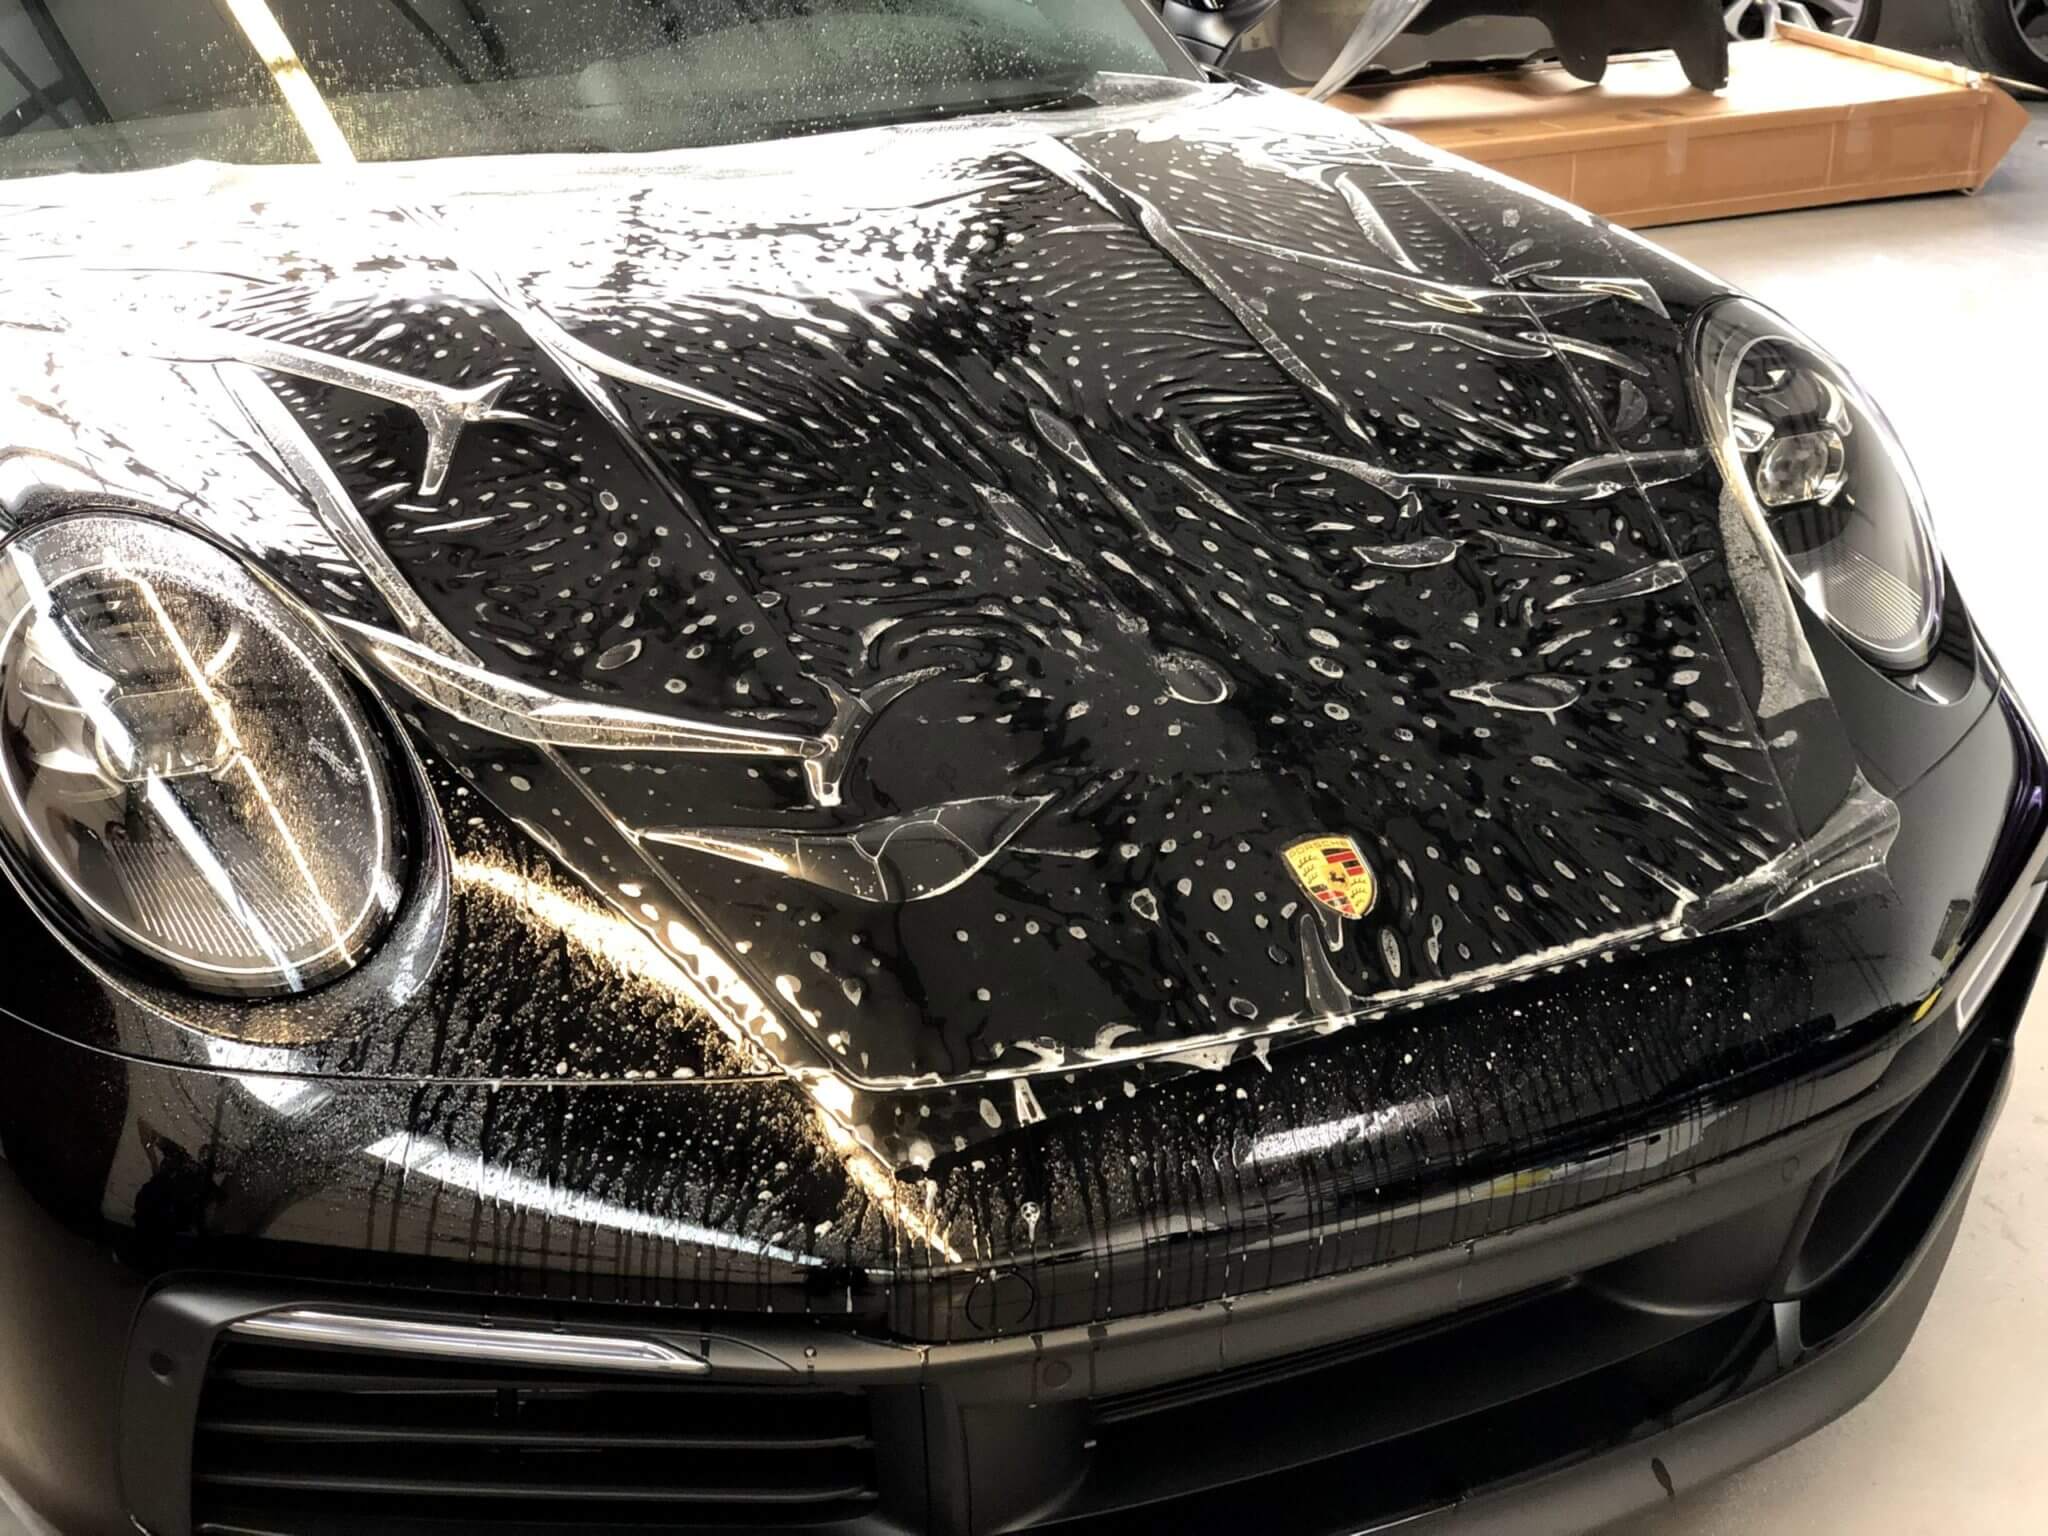 https://wrapsign.de/wp-content/uploads/2021/01/Porsche-Folierung-10-scaled.jpg